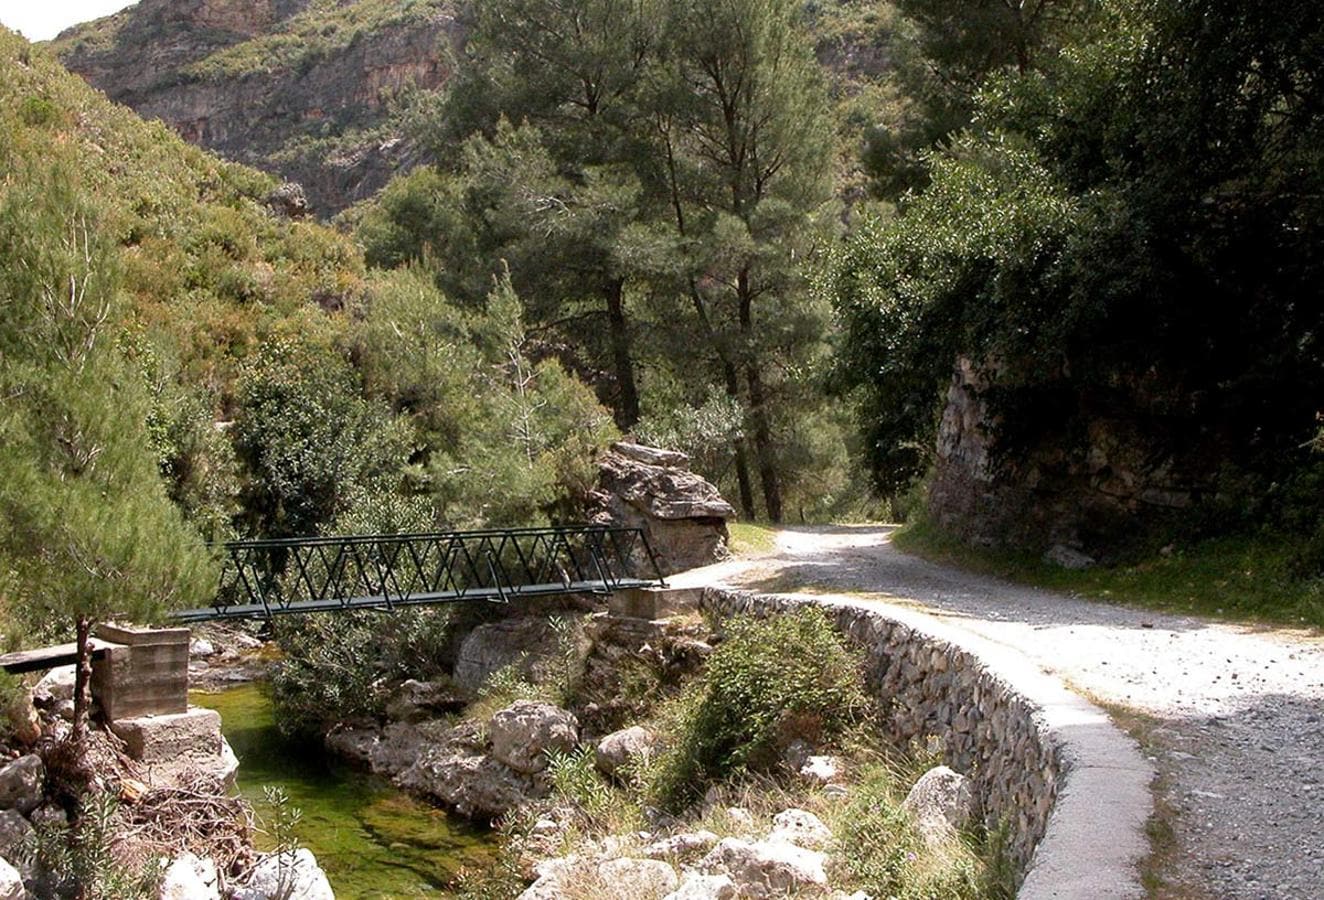 Los espacios naturales se han convertido en una nueva fuente de atracción hacia el medio rural y un aliciente económico para los pueblos. Parque Natural de las sierras de Almijara, Alhama y Tejeda, Granada y Málaga